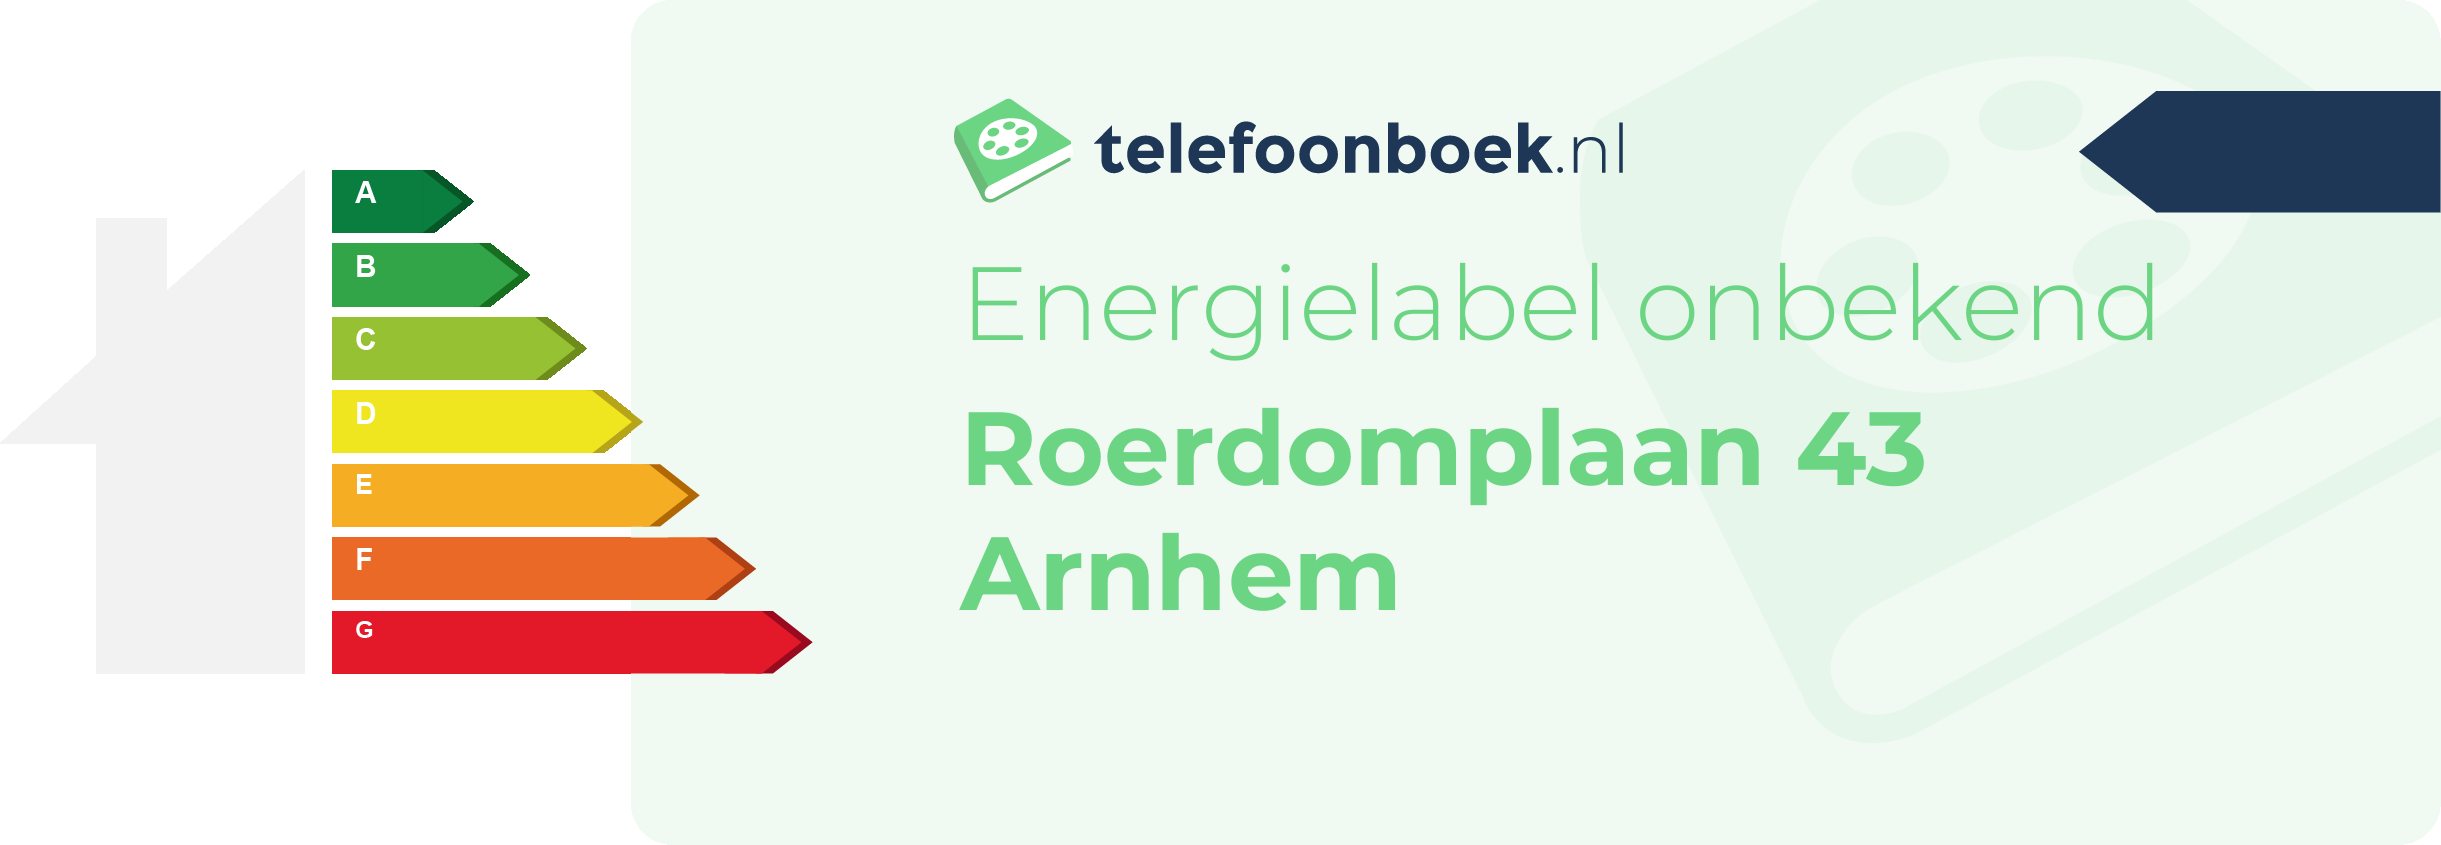 Energielabel Roerdomplaan 43 Arnhem